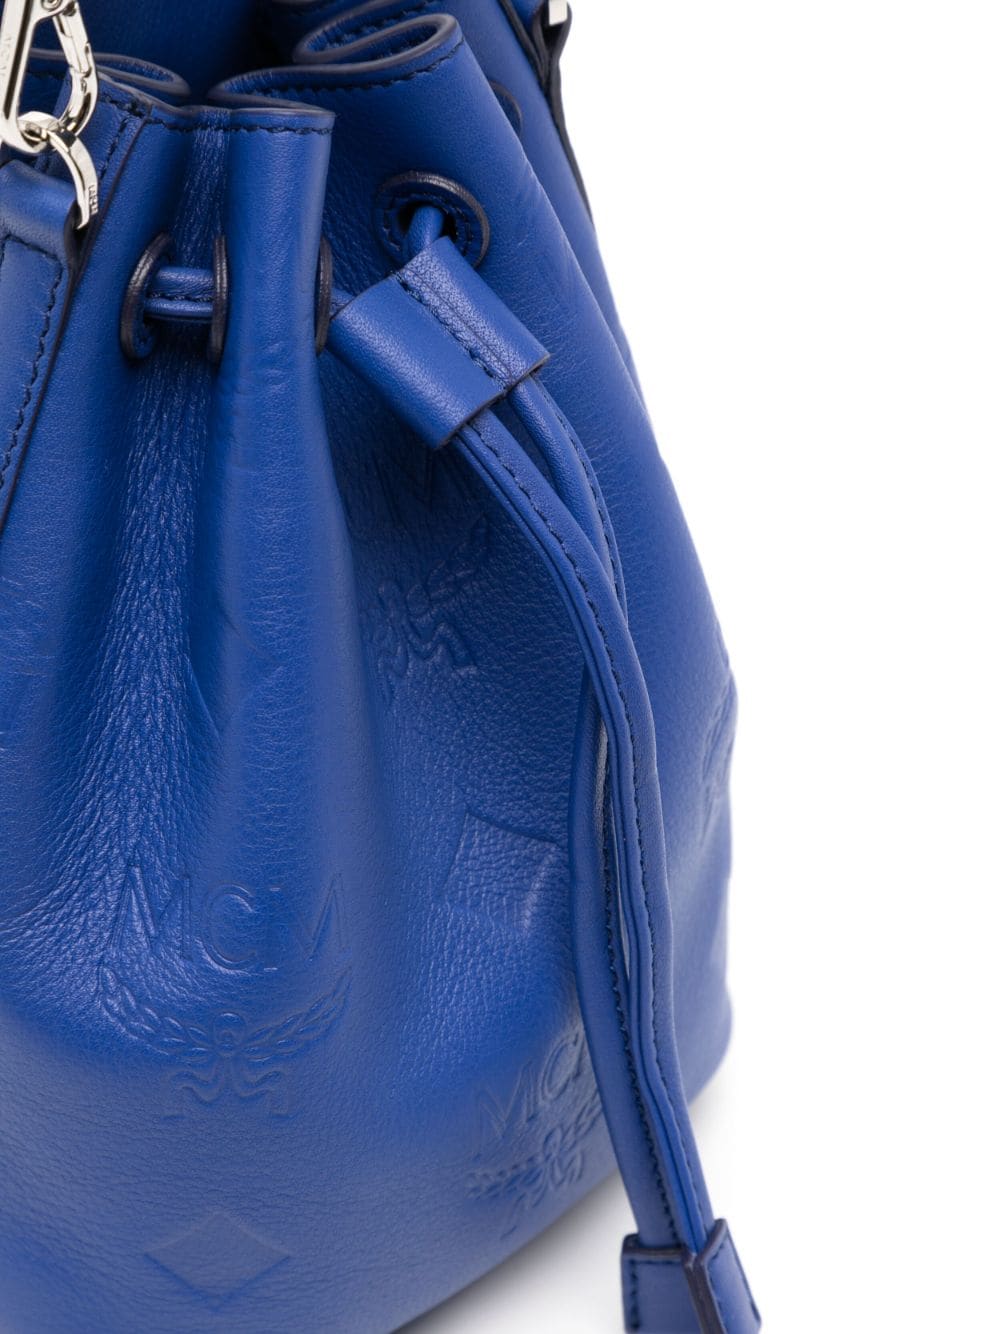 Mcm Mini Dessau Monogram Bucket Bag - Blue